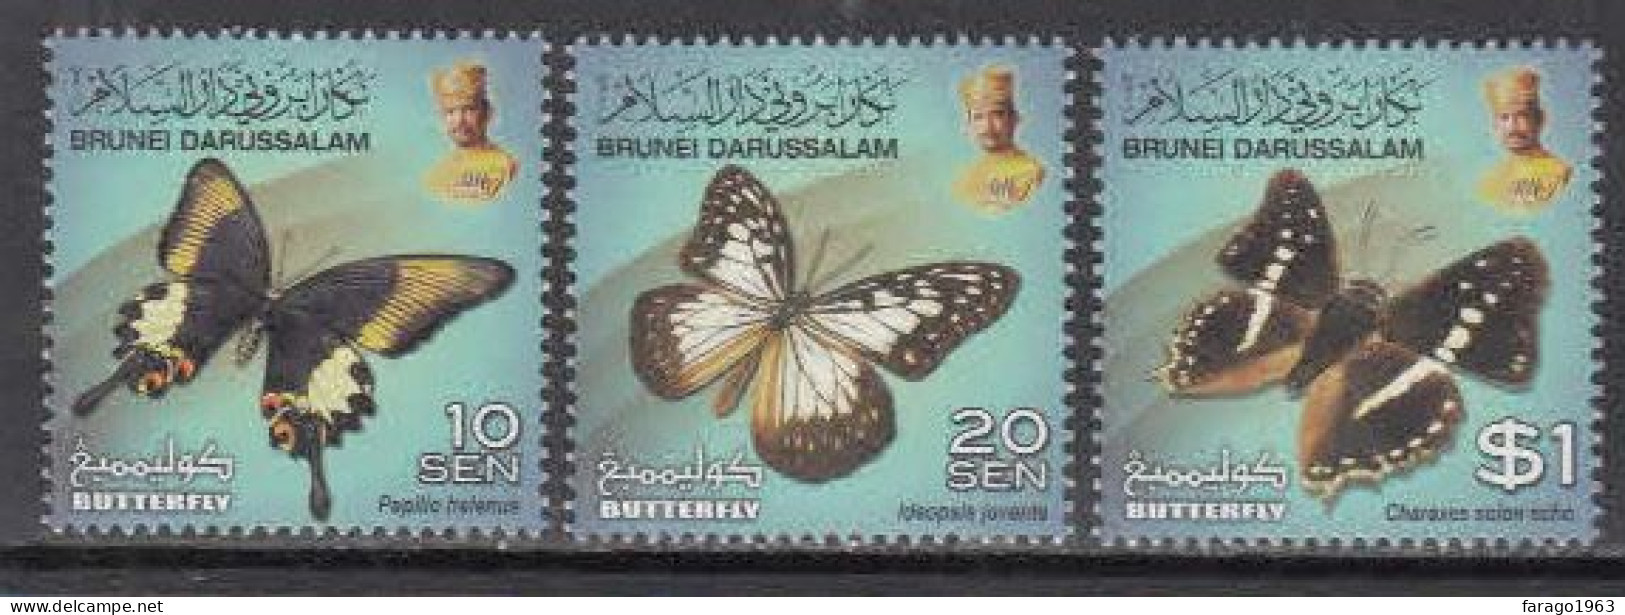 2013 Brunei Butterflies SERIES TWO Complete Set Of 3 MNH - Brunei (1984-...)